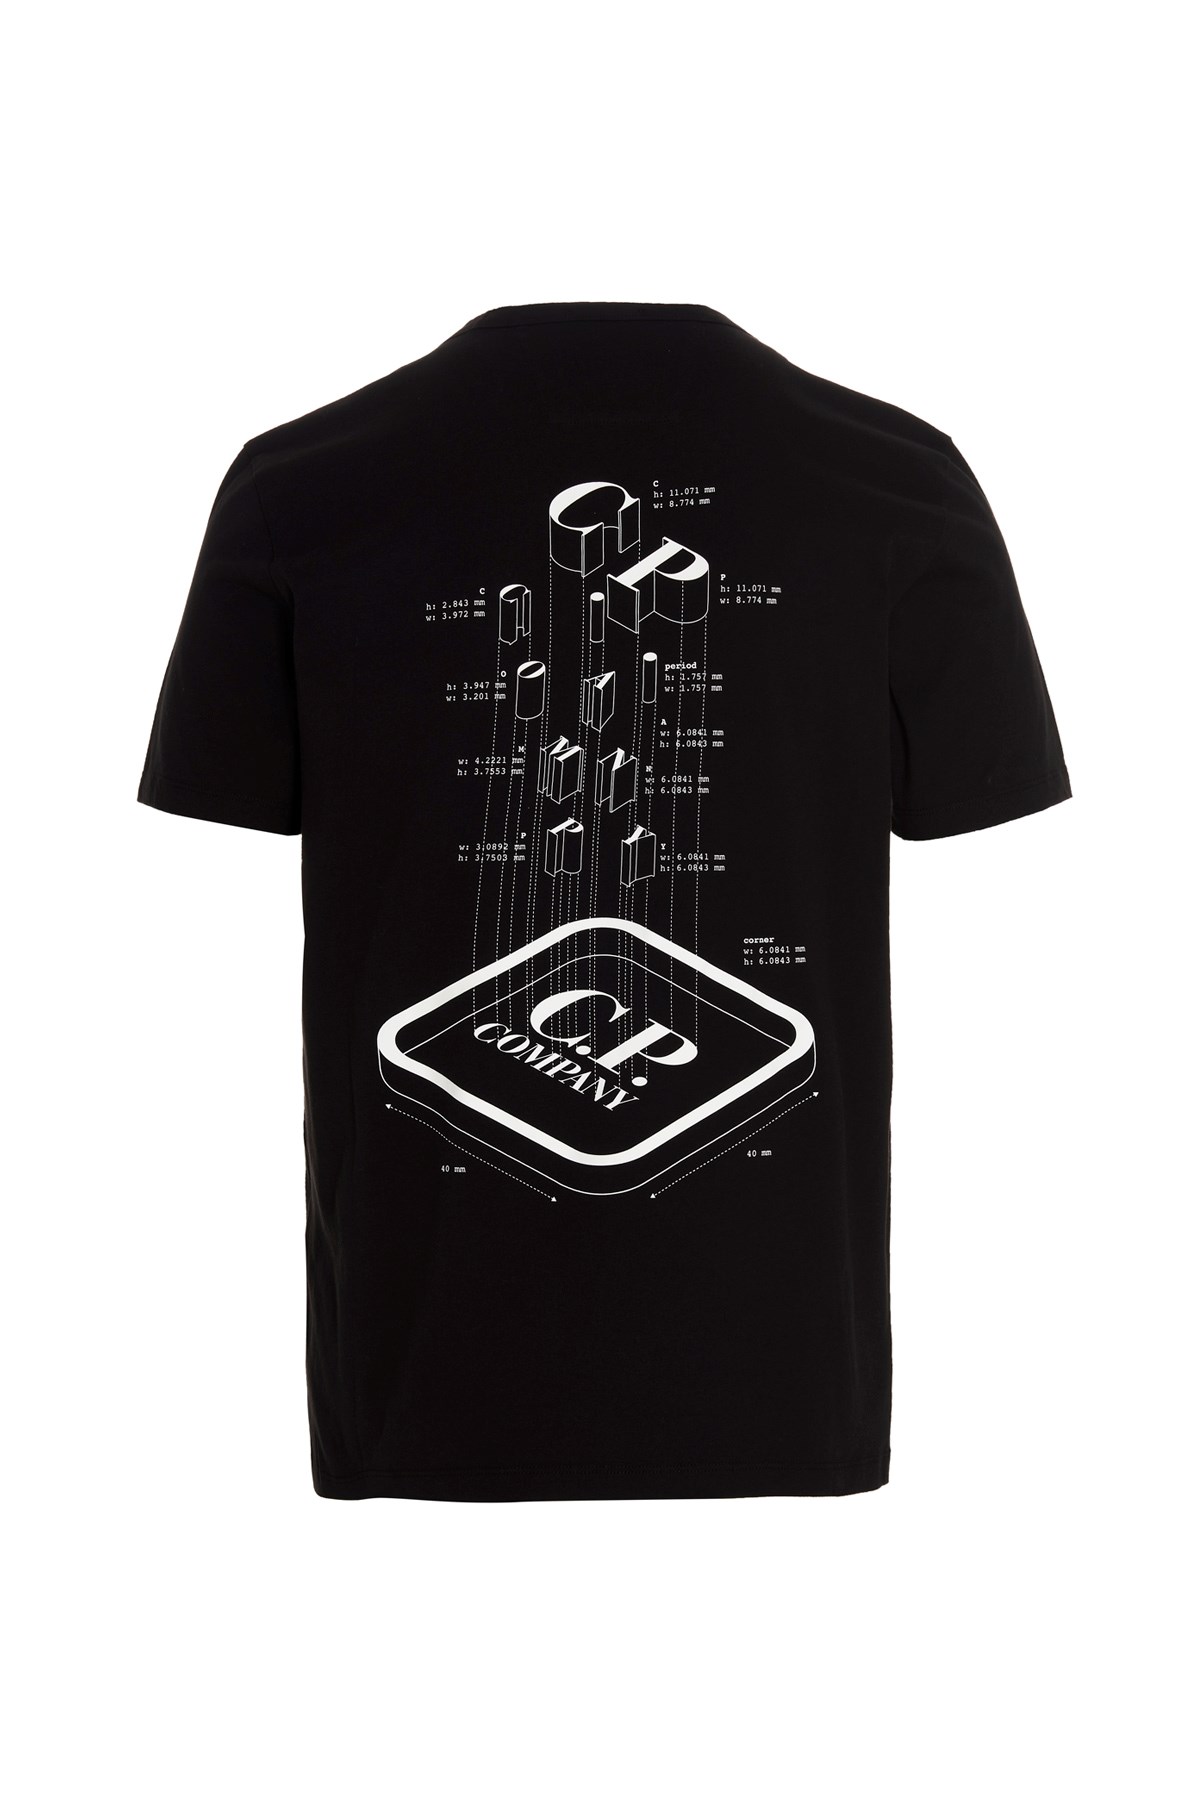 C.P. COMPANY Metropolis Linie – T-Shirt